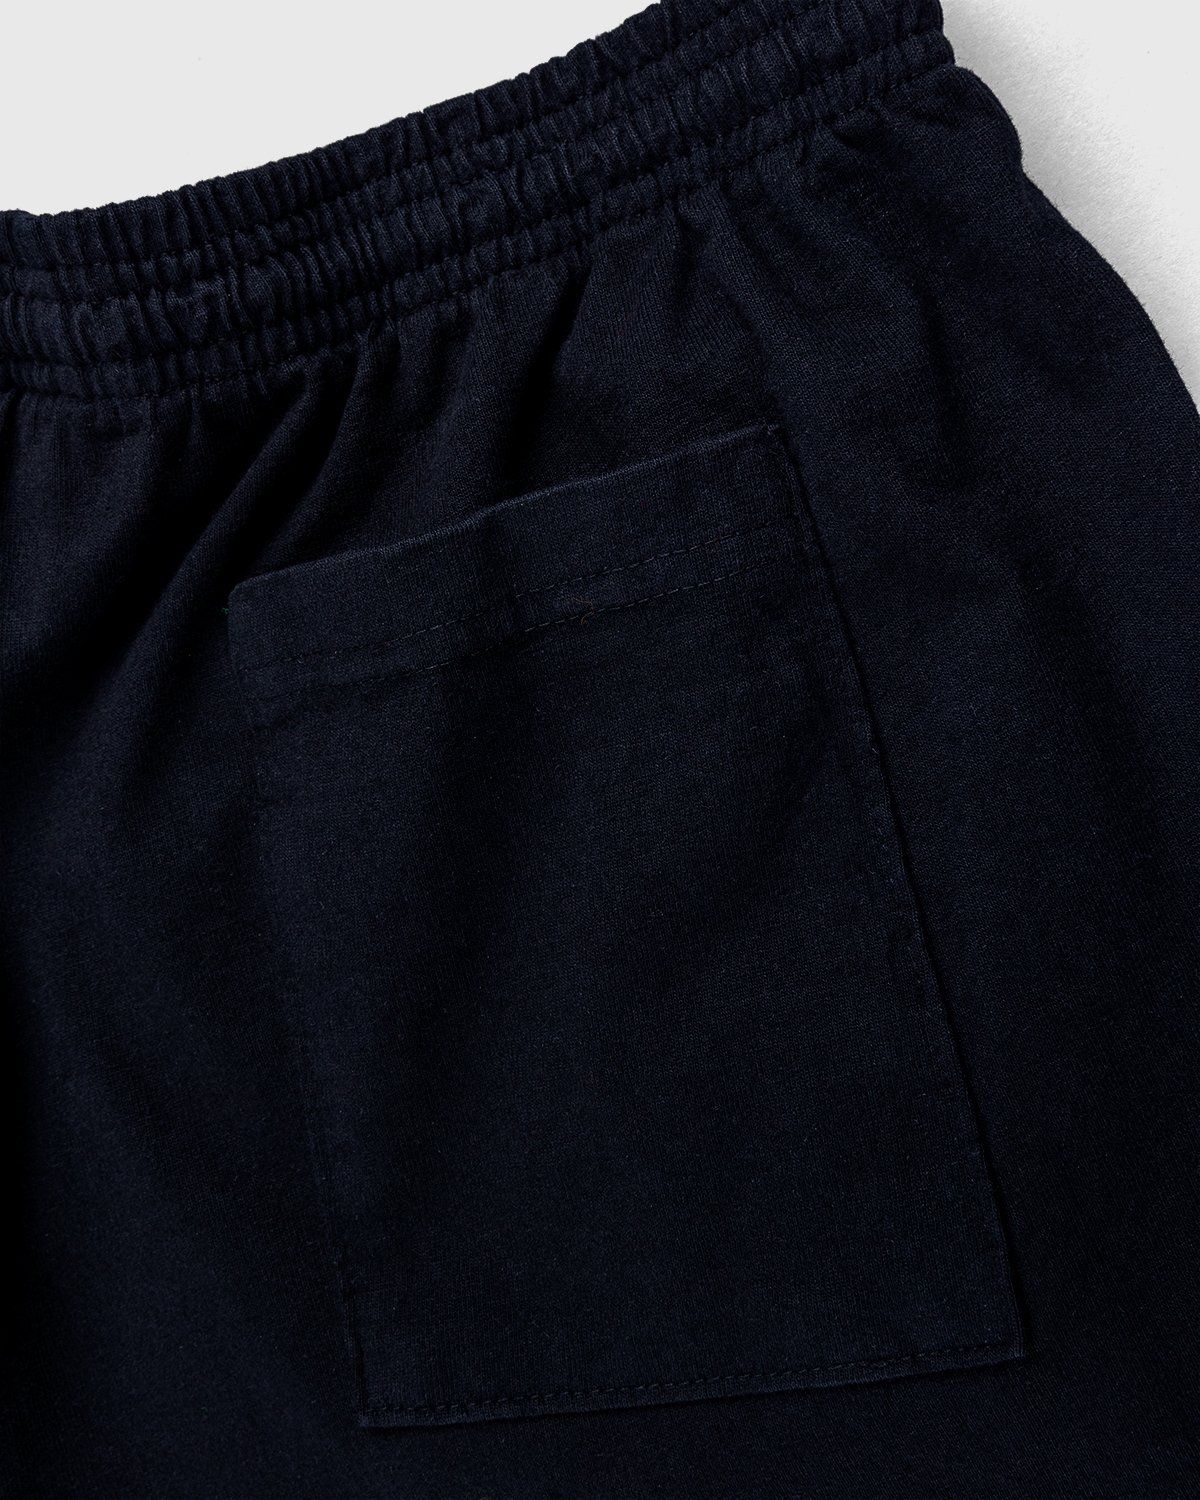 Bstroy x Highsnobiety – Shorts Black - Shorts - Black - Image 3